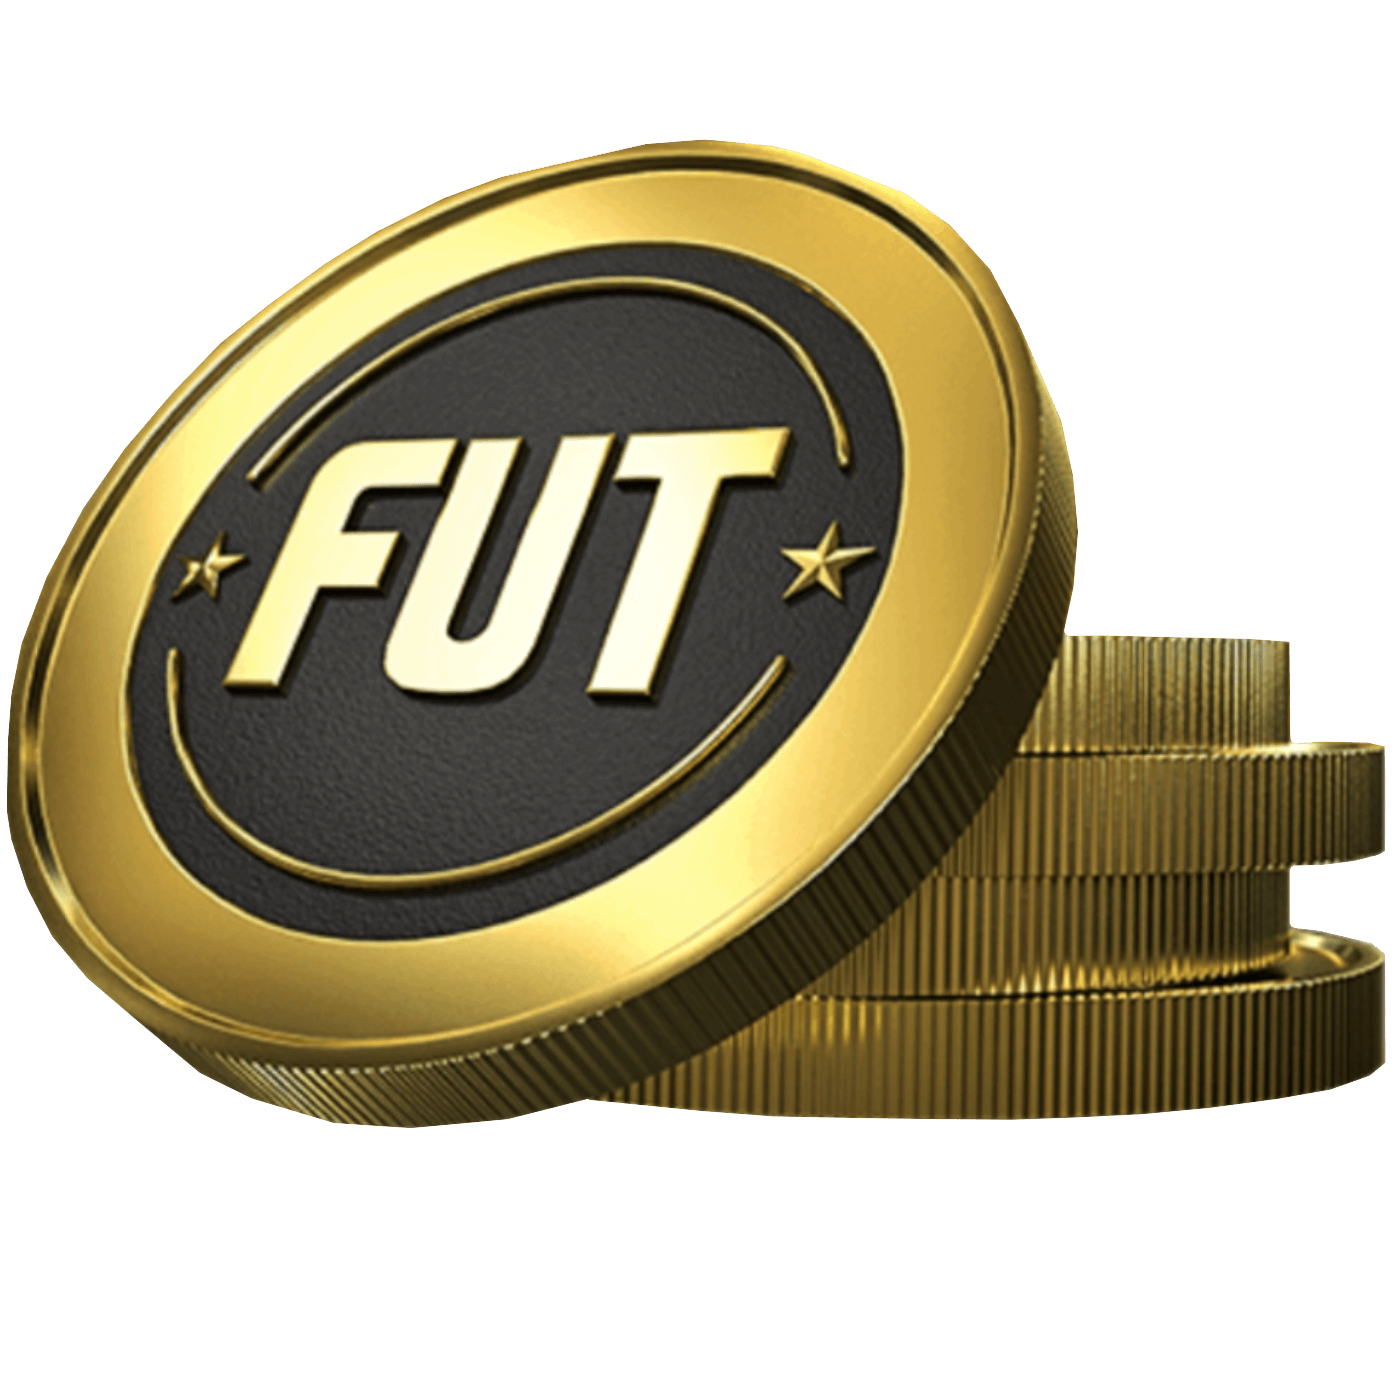 Купить монеты fc 24. FIFA 22 монеты. FIFA 23 Coins. FIFA коин. Монеты ФИФА на прозрачном фоне.